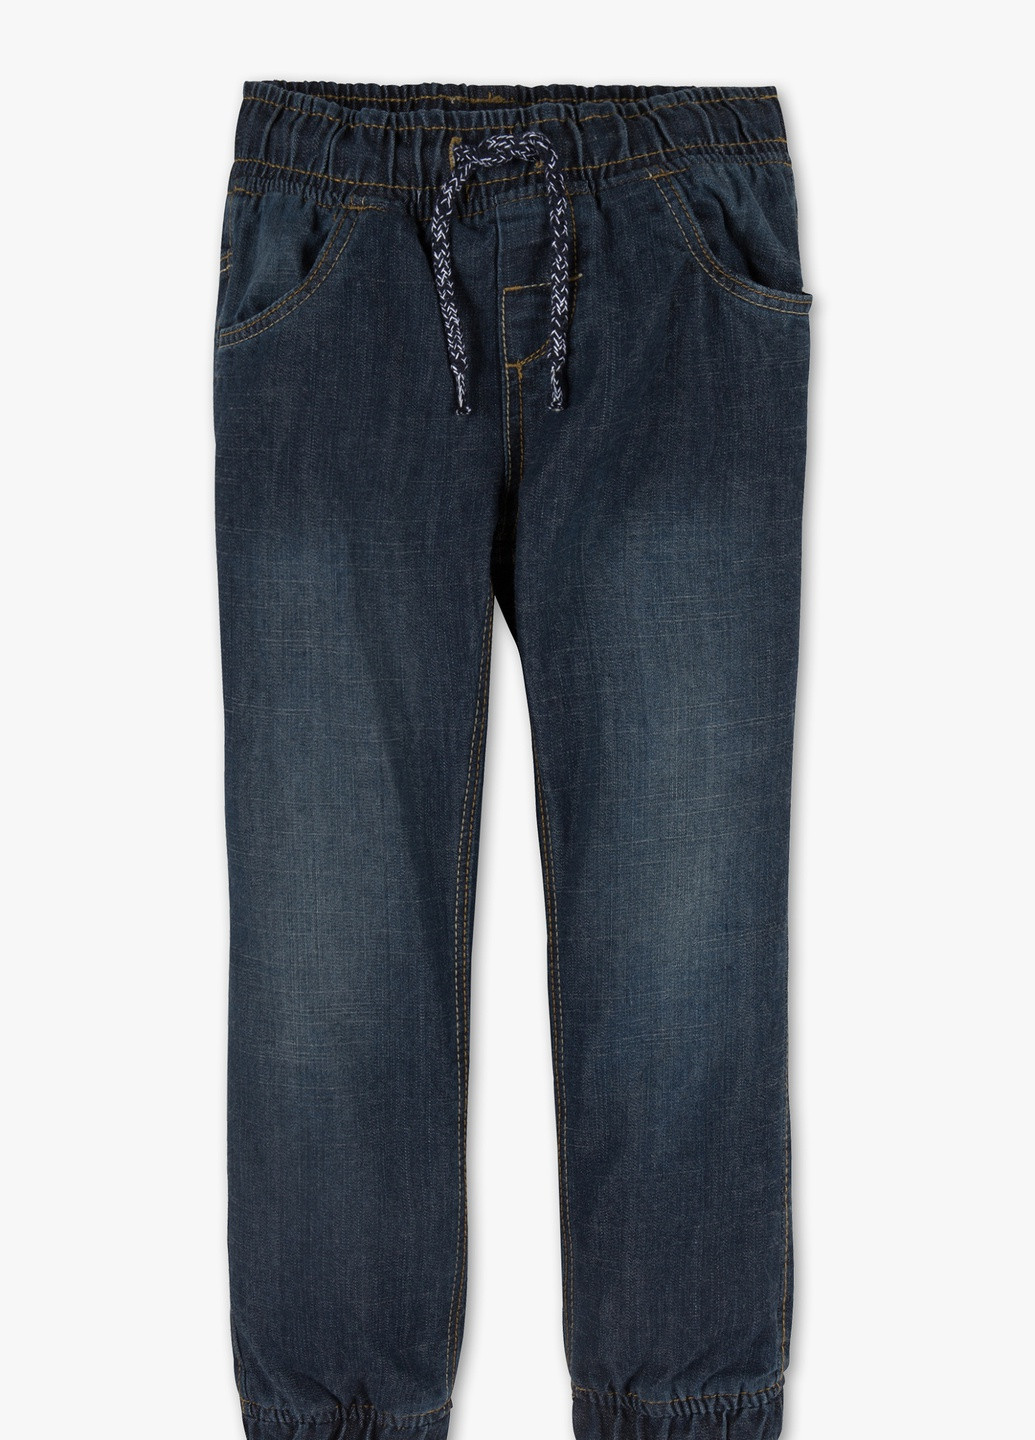 Темно-синие зимние термо джинсы на флисовой подкладке для мальчика C&A